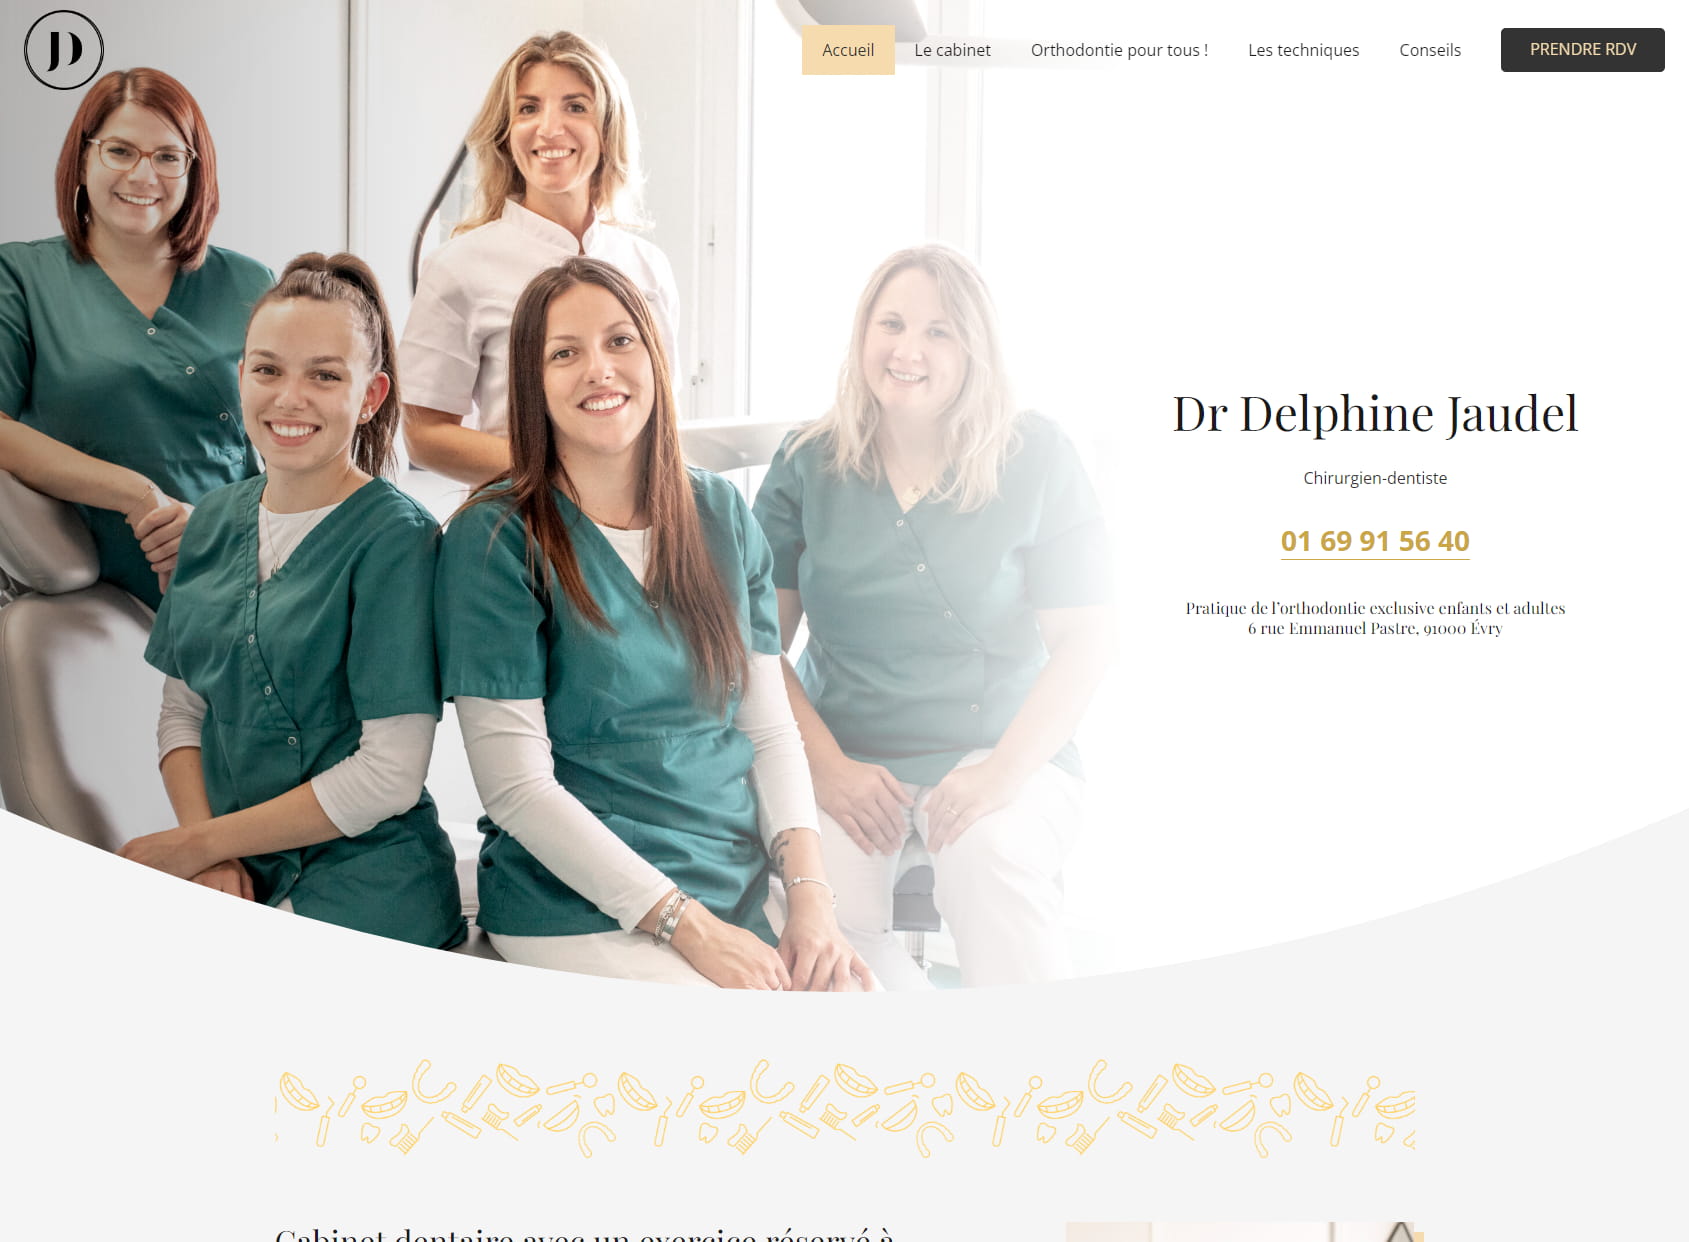 Dr Delphine Jaudel - Orthodontie à Evry - Orthodontie invisible par Aligneur